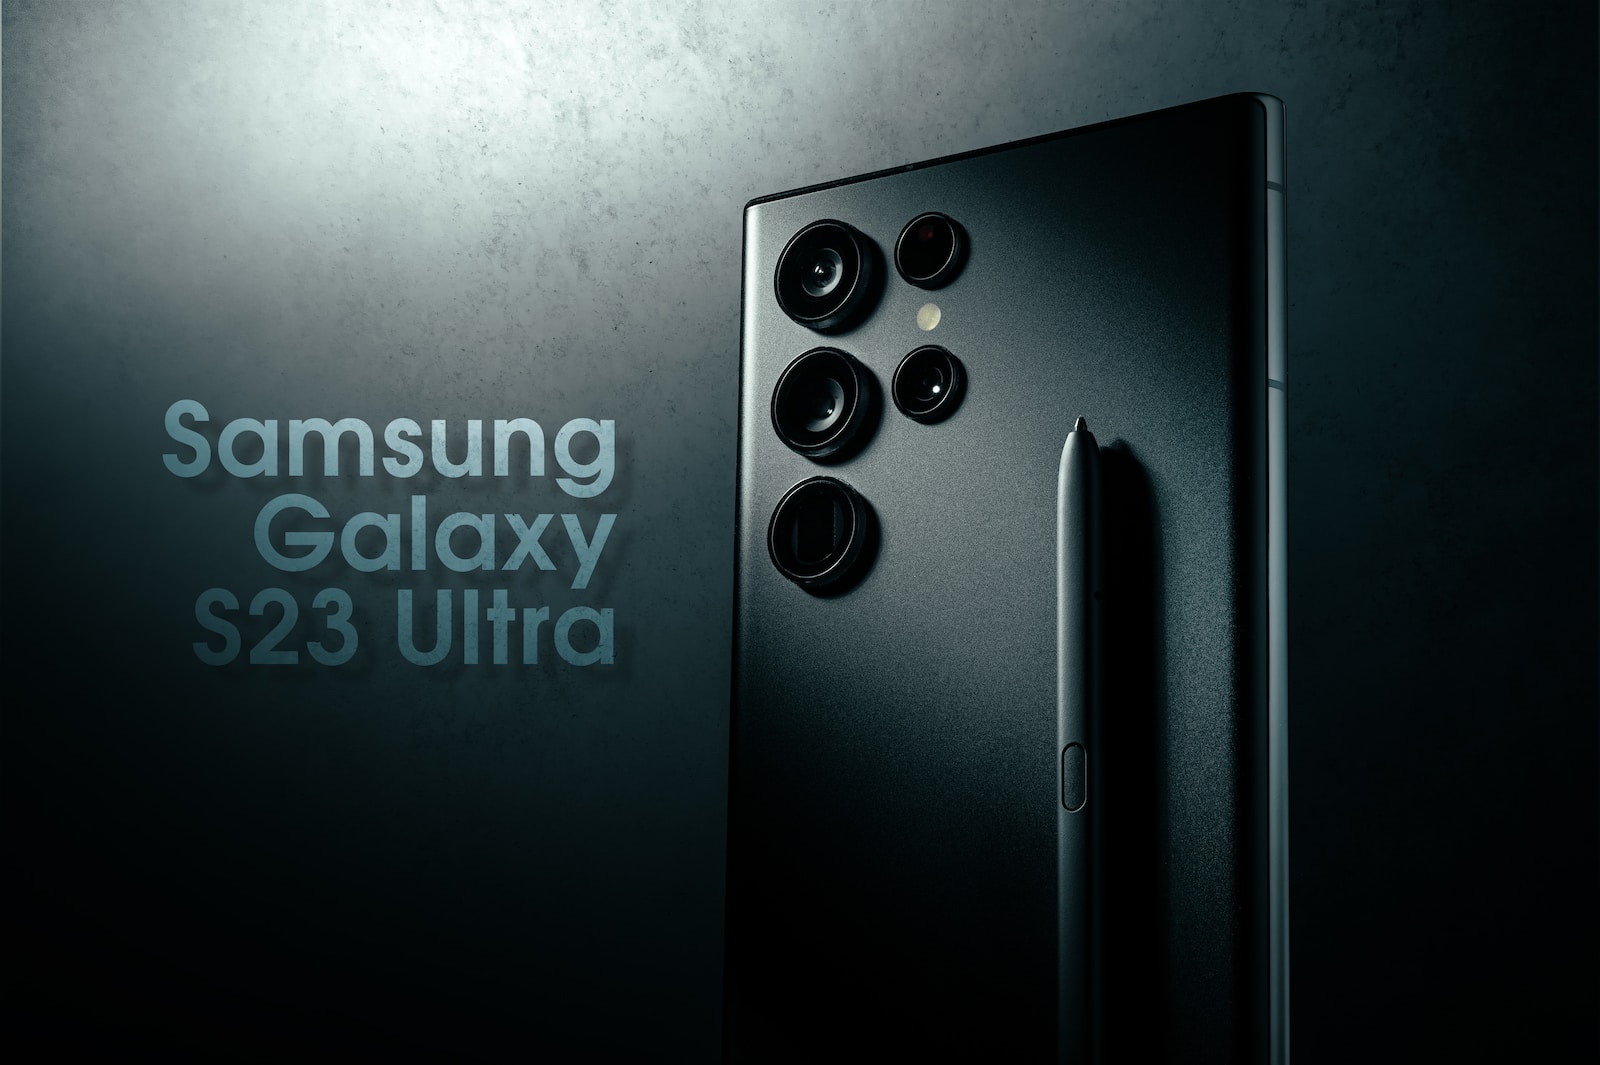 Samsung Galaxy S23 Ultra tech gadget